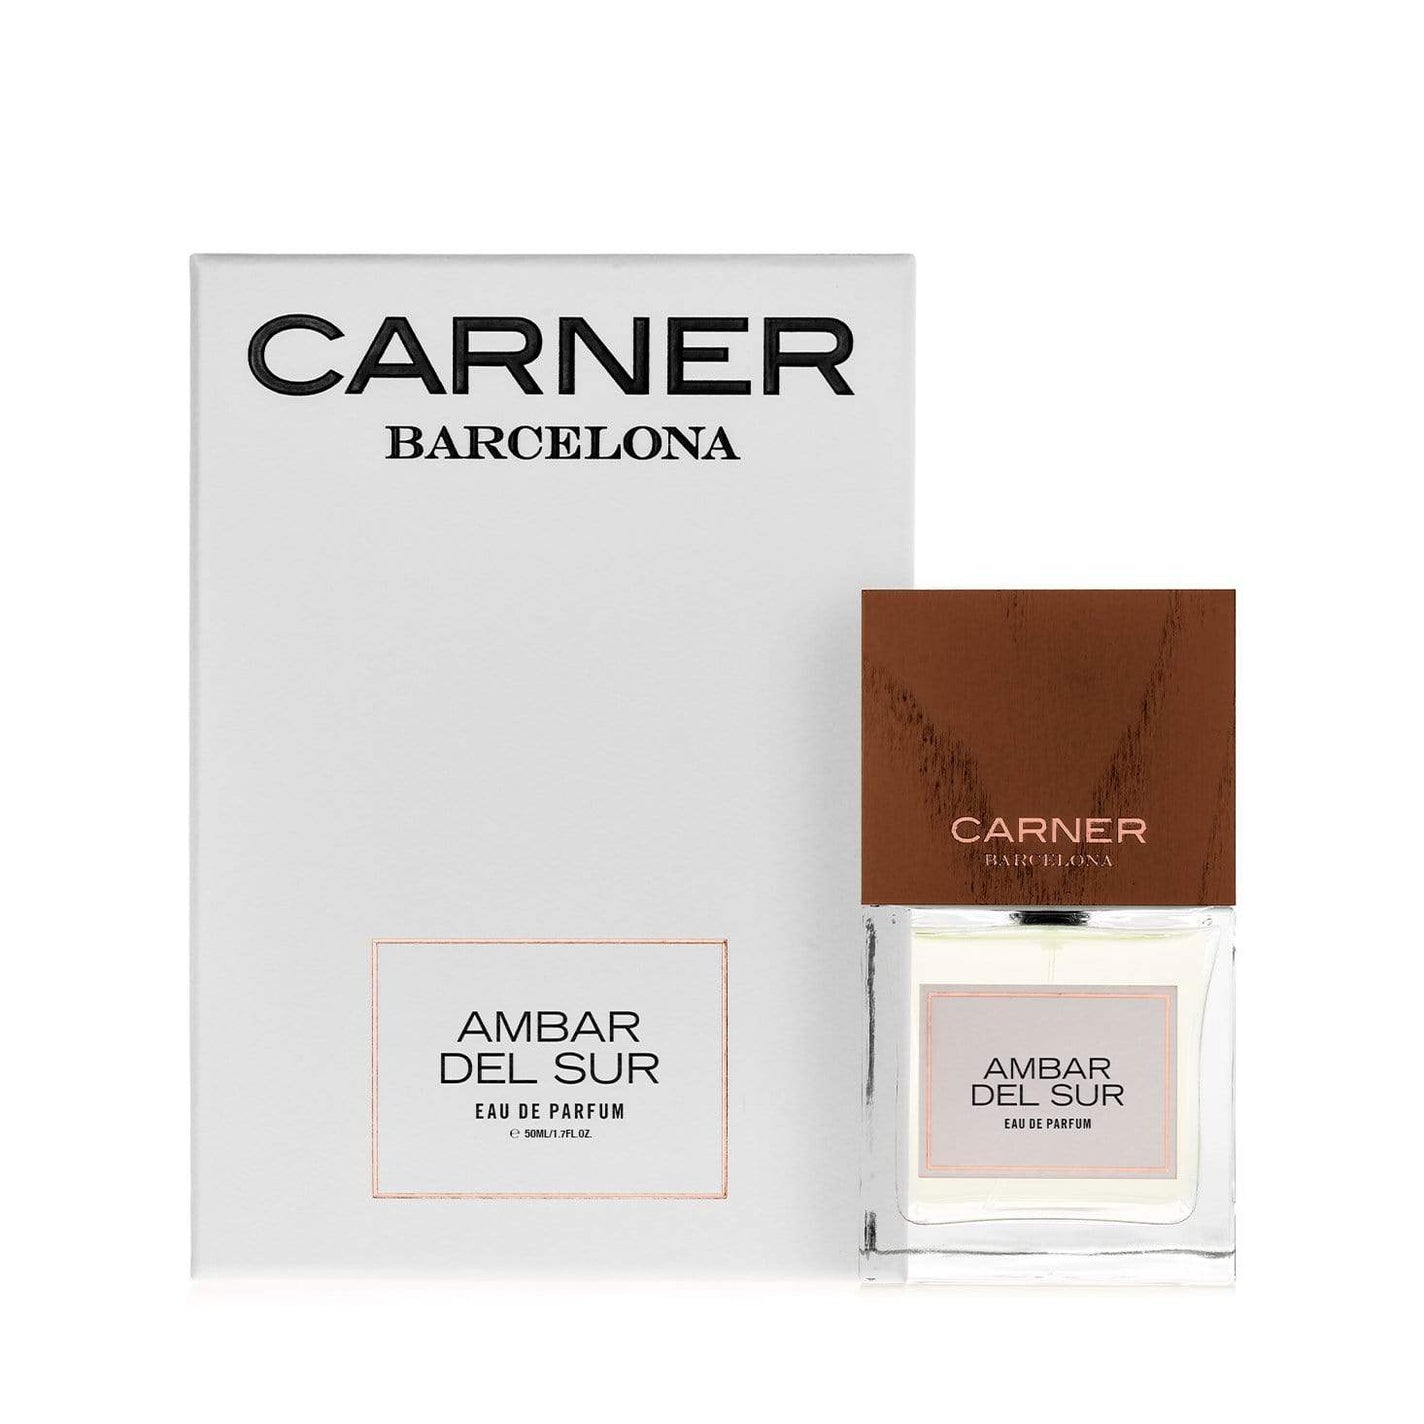 CARNER BARCELONA Ambar del Sur Eau de Parfum - 50ml